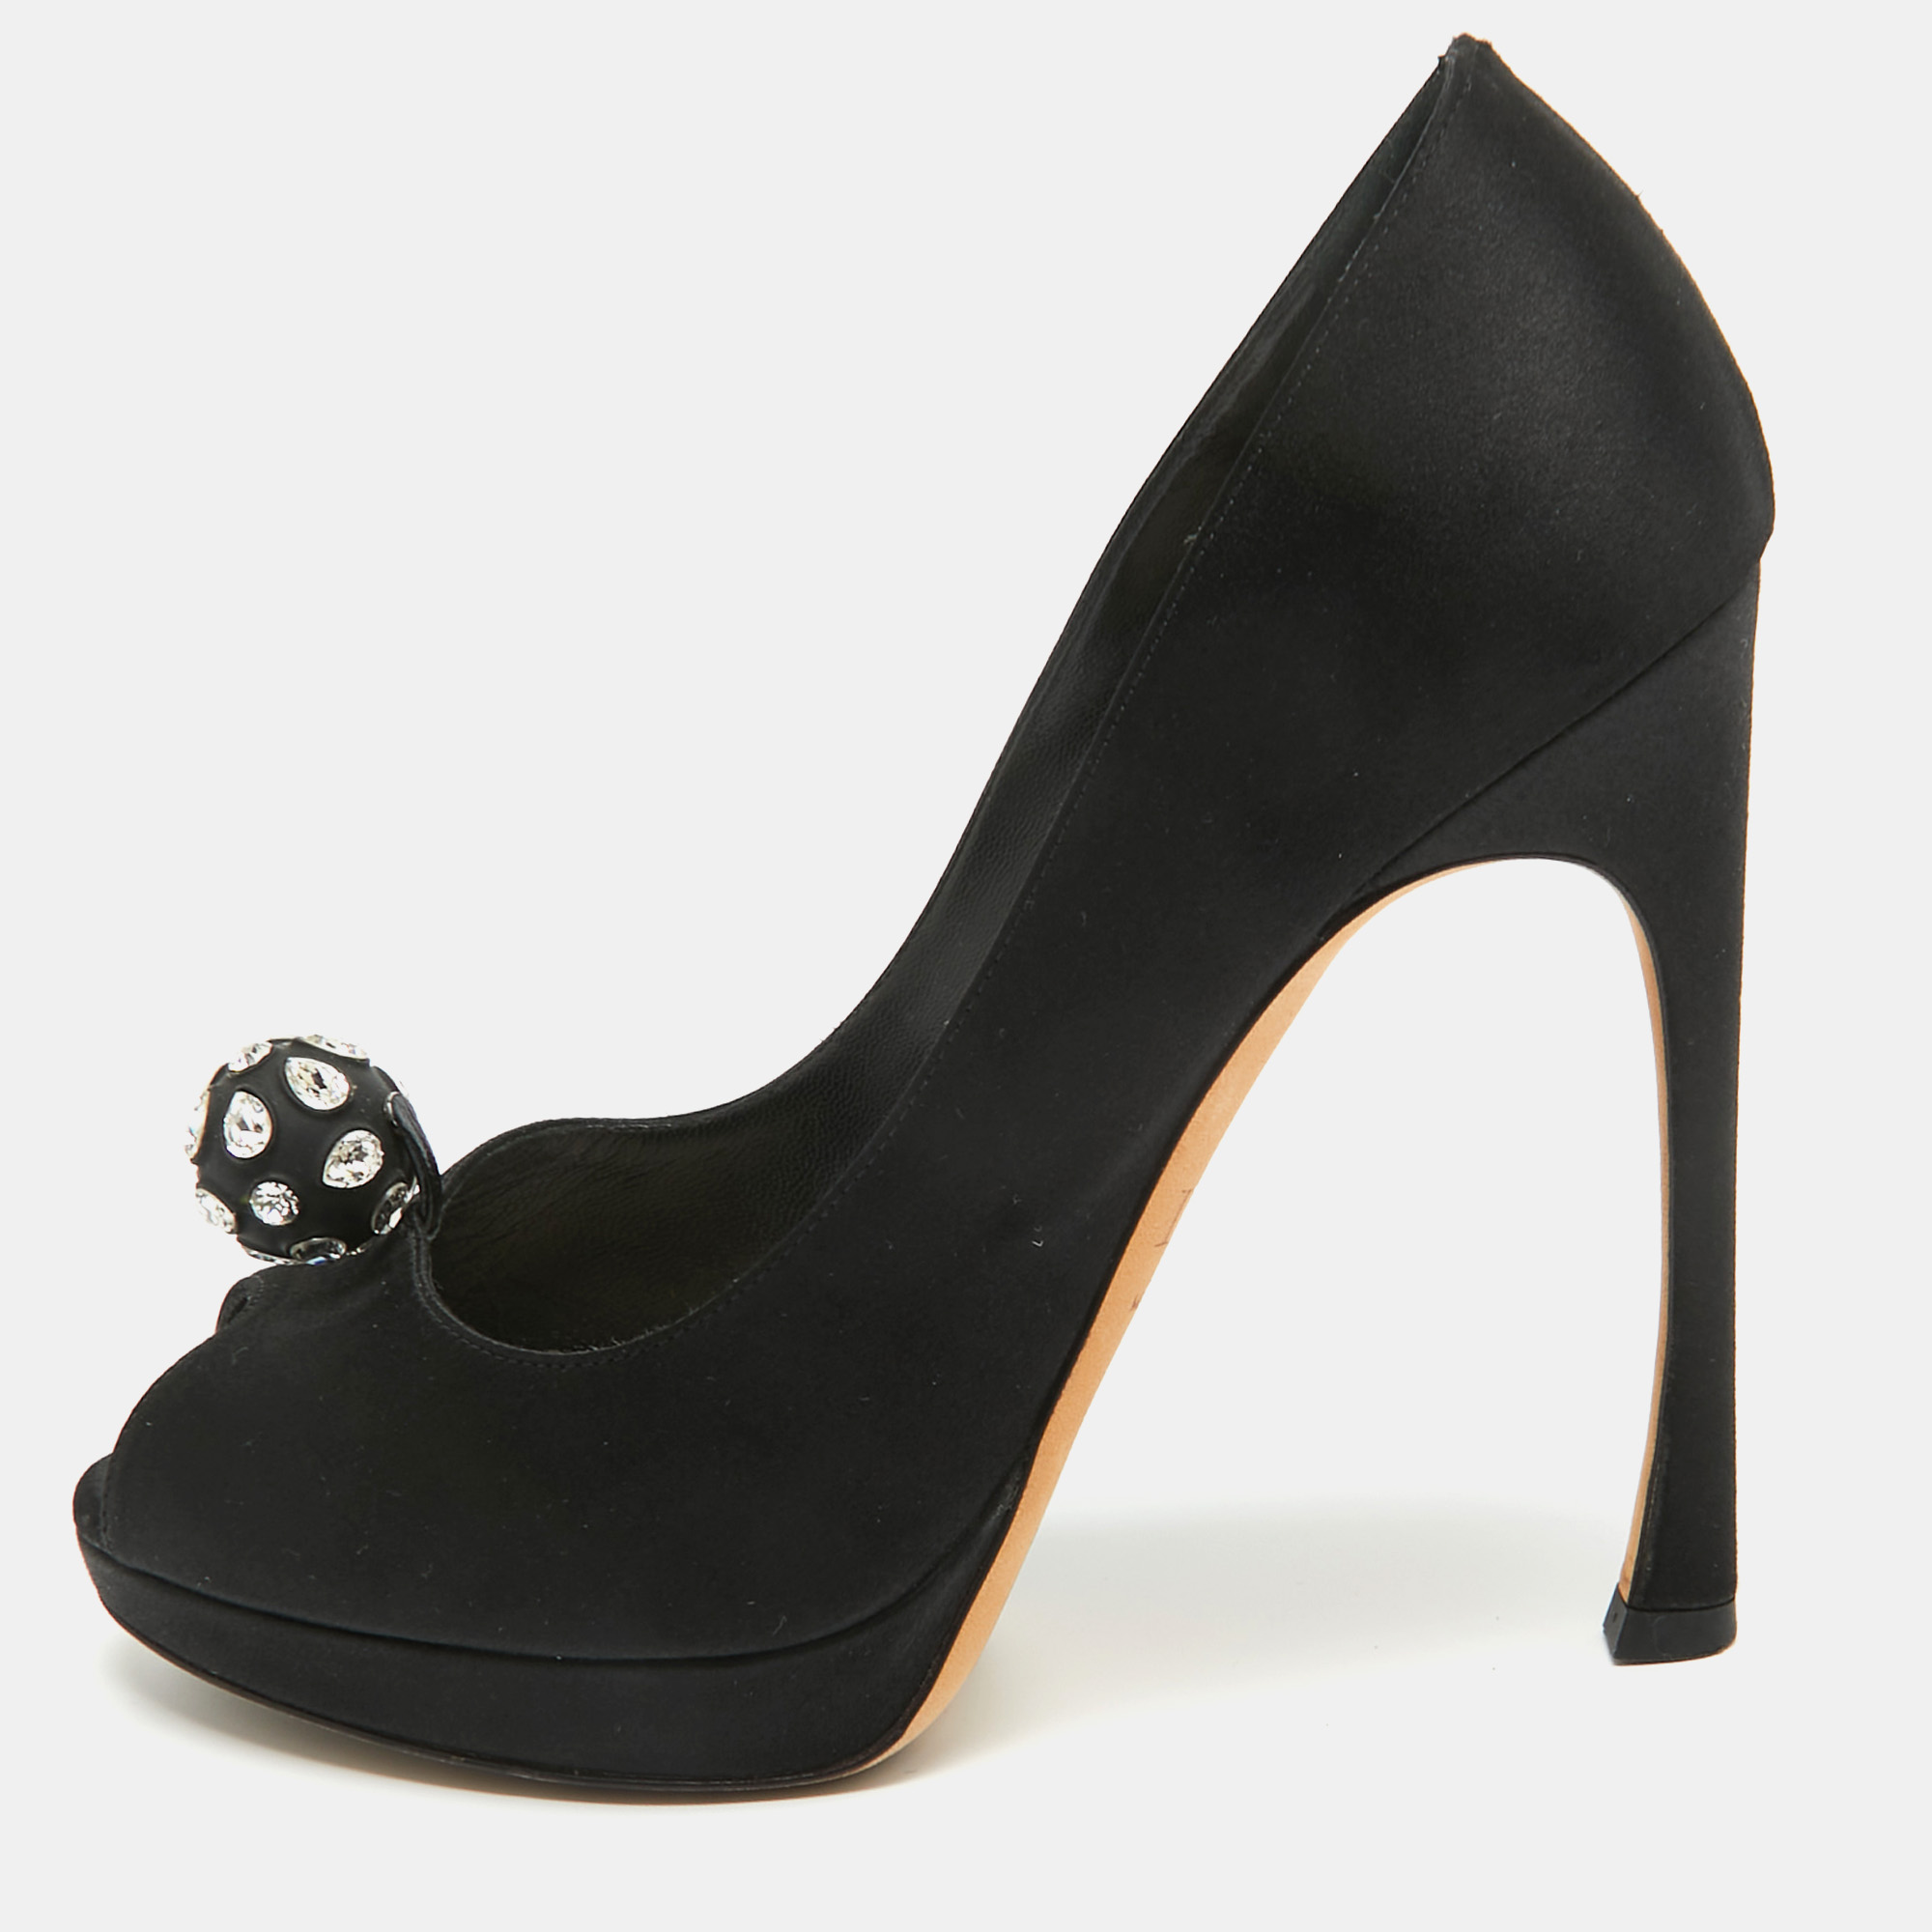 Pre-owned Dior Black Satin Crystal Embellished Peep Toe Pumps Size 37.5